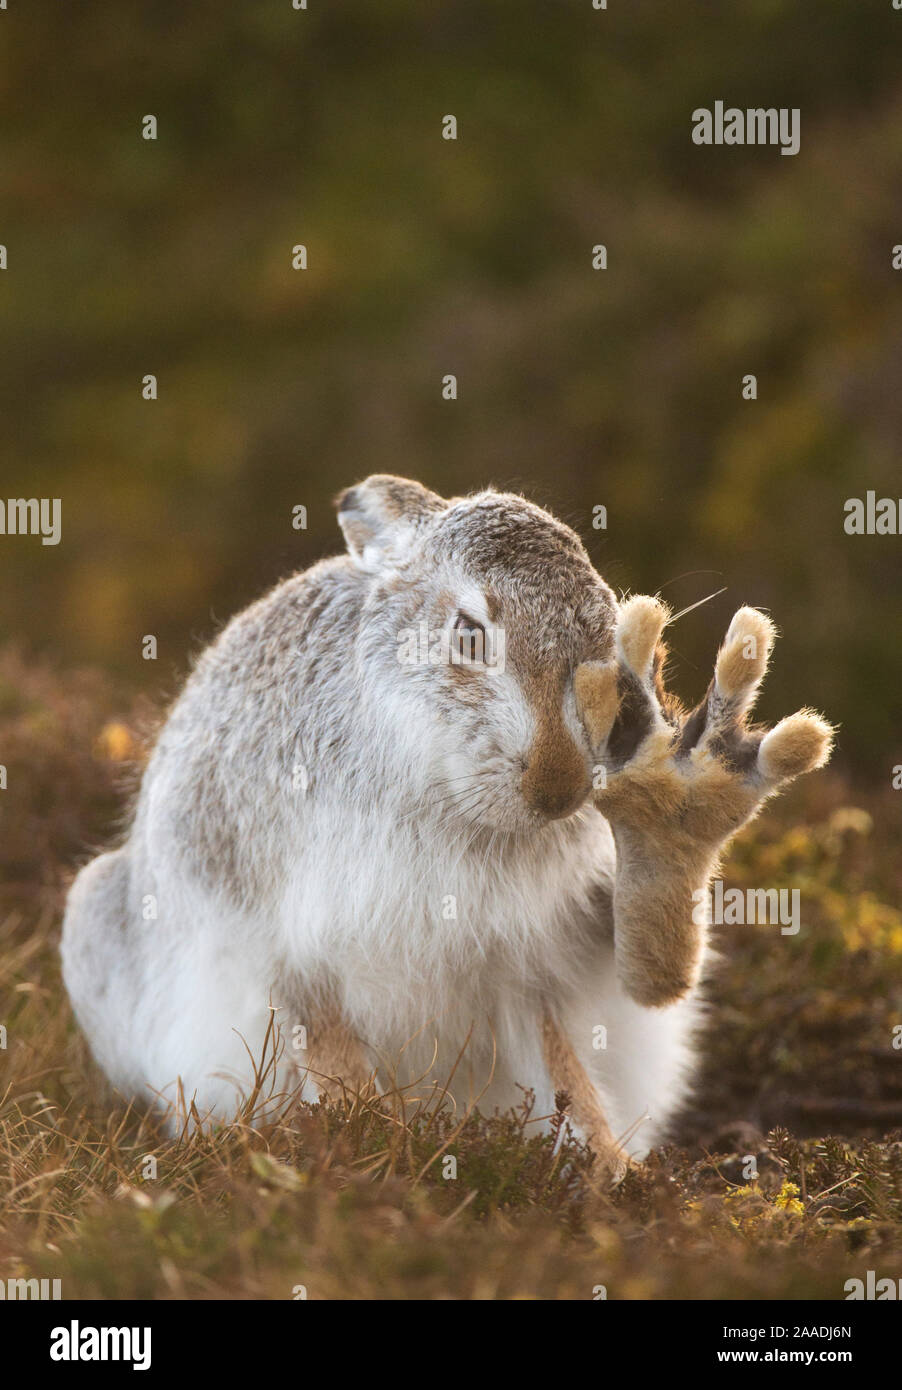 Animal nacional de escocia fotografías e imágenes de alta resolución - Alamy